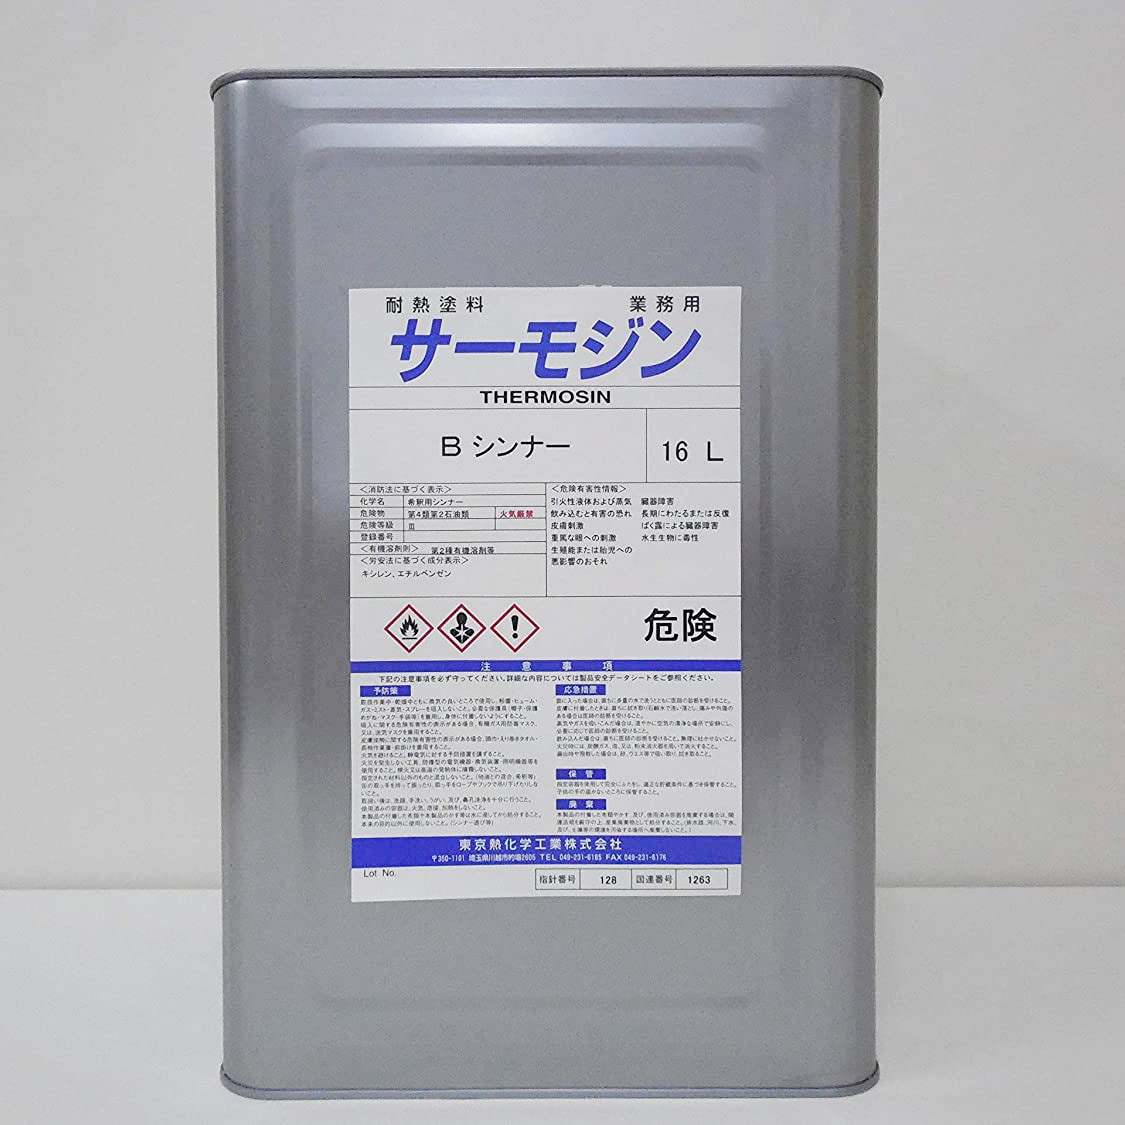 サーモジン耐熱塗料Bタイプ専用 希釈シンナー 1缶(1L) サーモジン